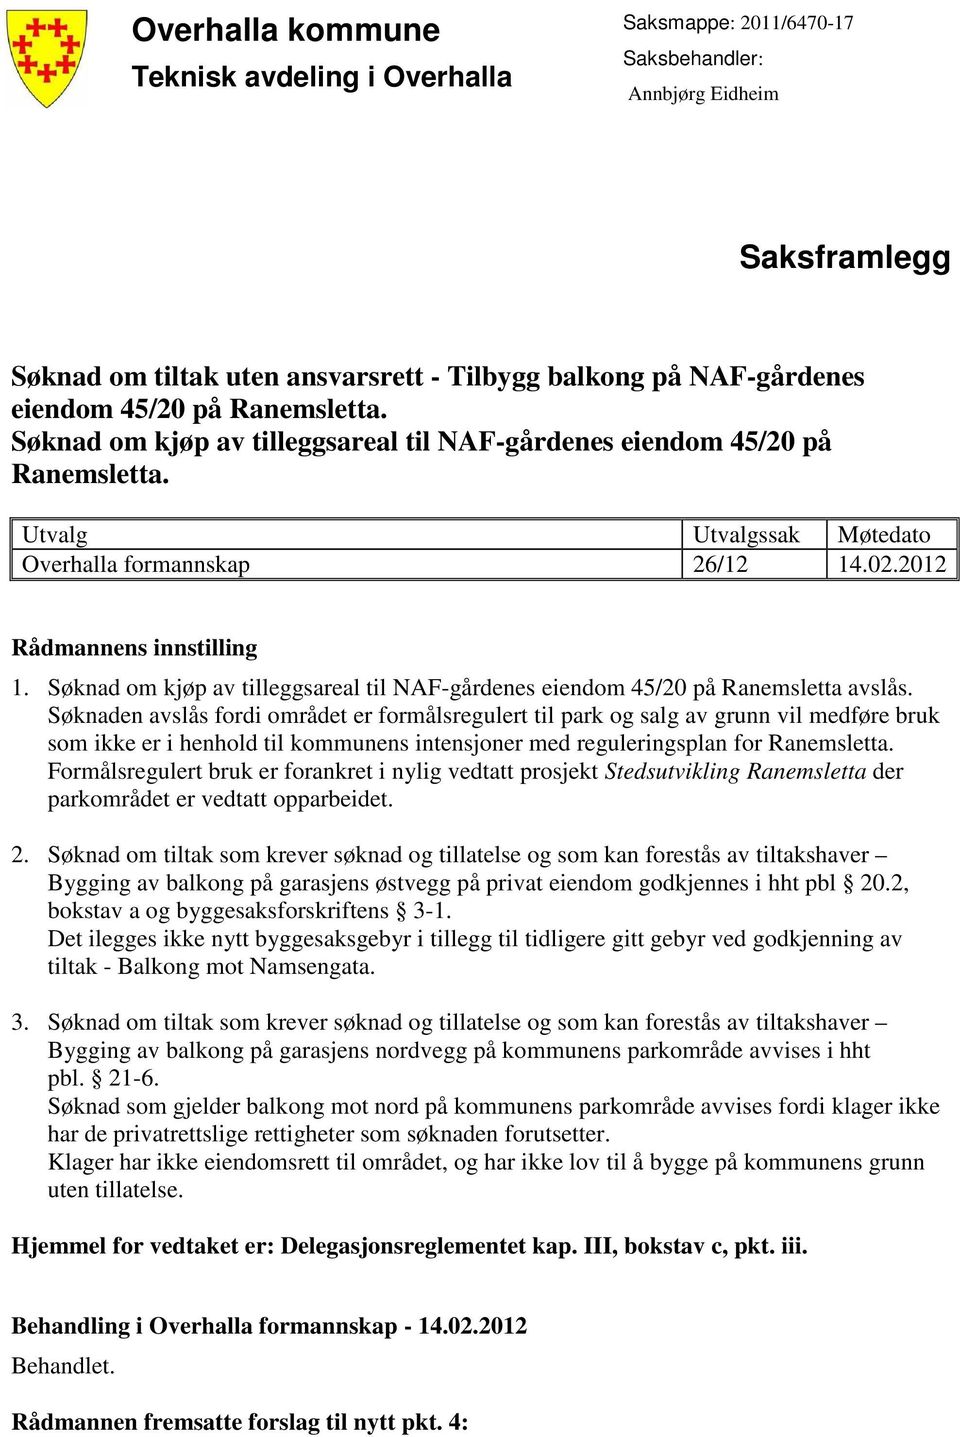 Søknad om kjøp av tilleggsareal til NAF-gårdenes eiendom 45/20 på Ranemsletta avslås.